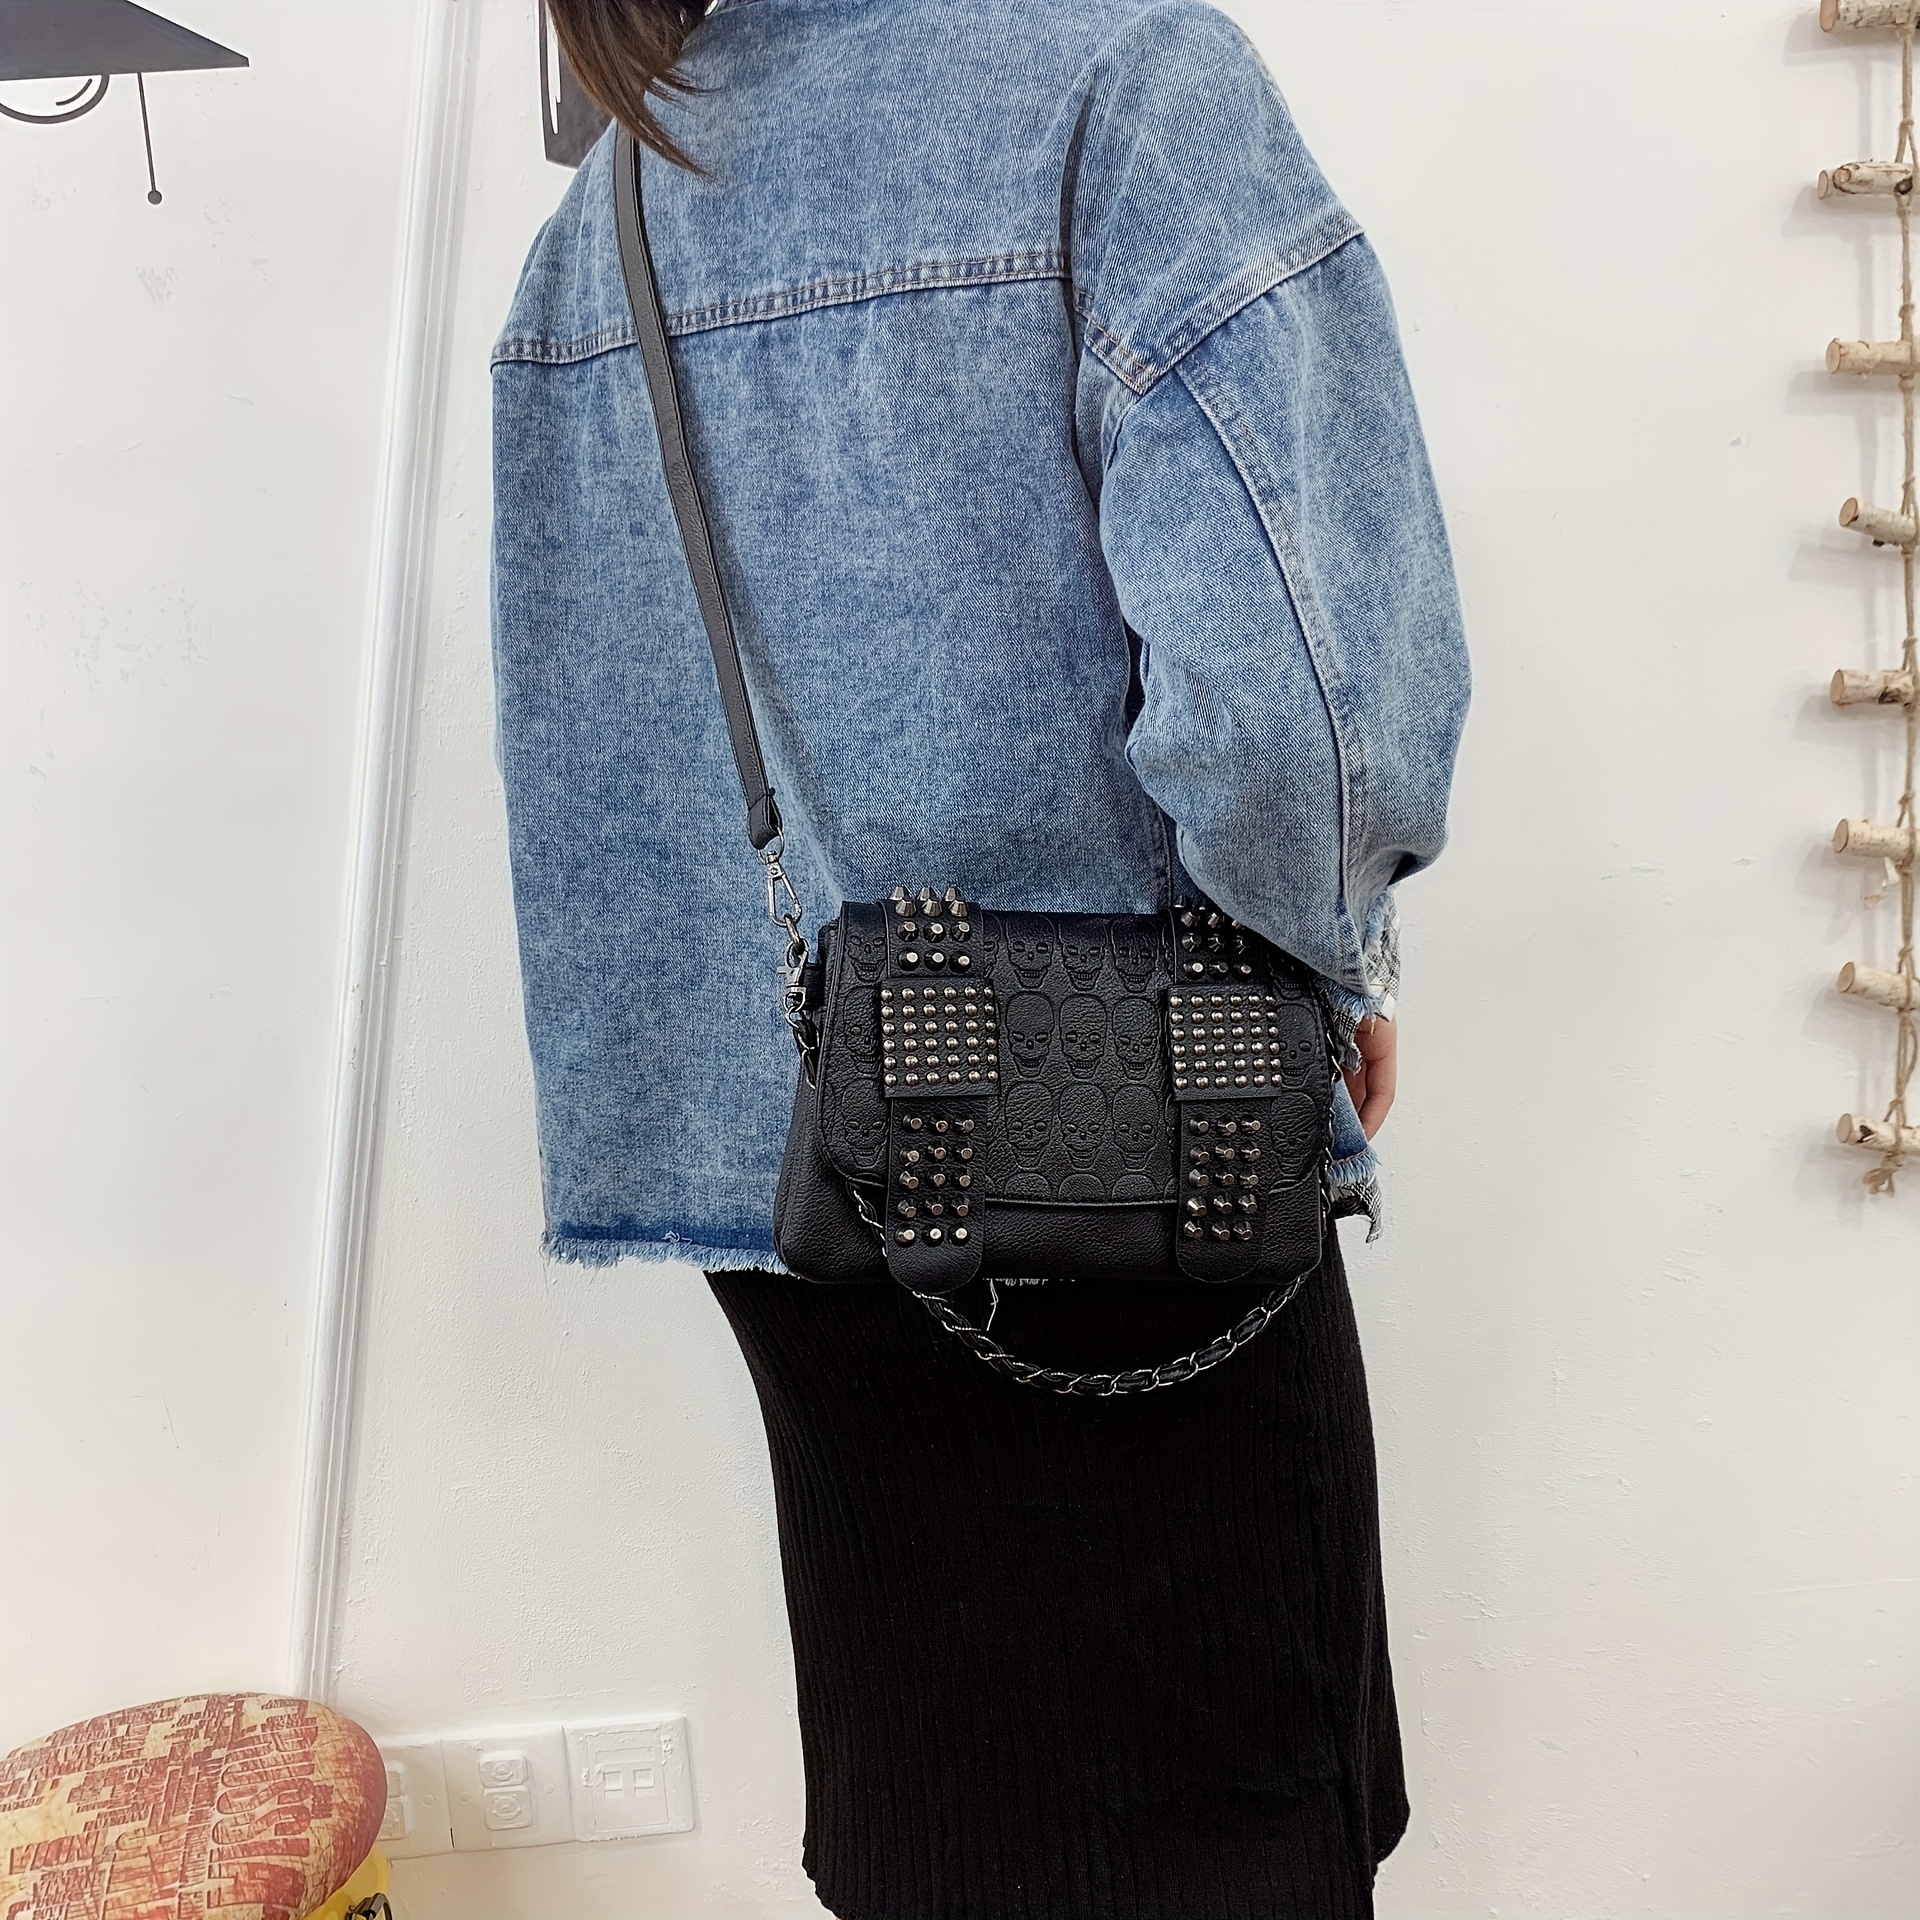 Women Fashion PU Leather Rivet Studded Shoulder Bag Crossbody Bag Messenger  Bags